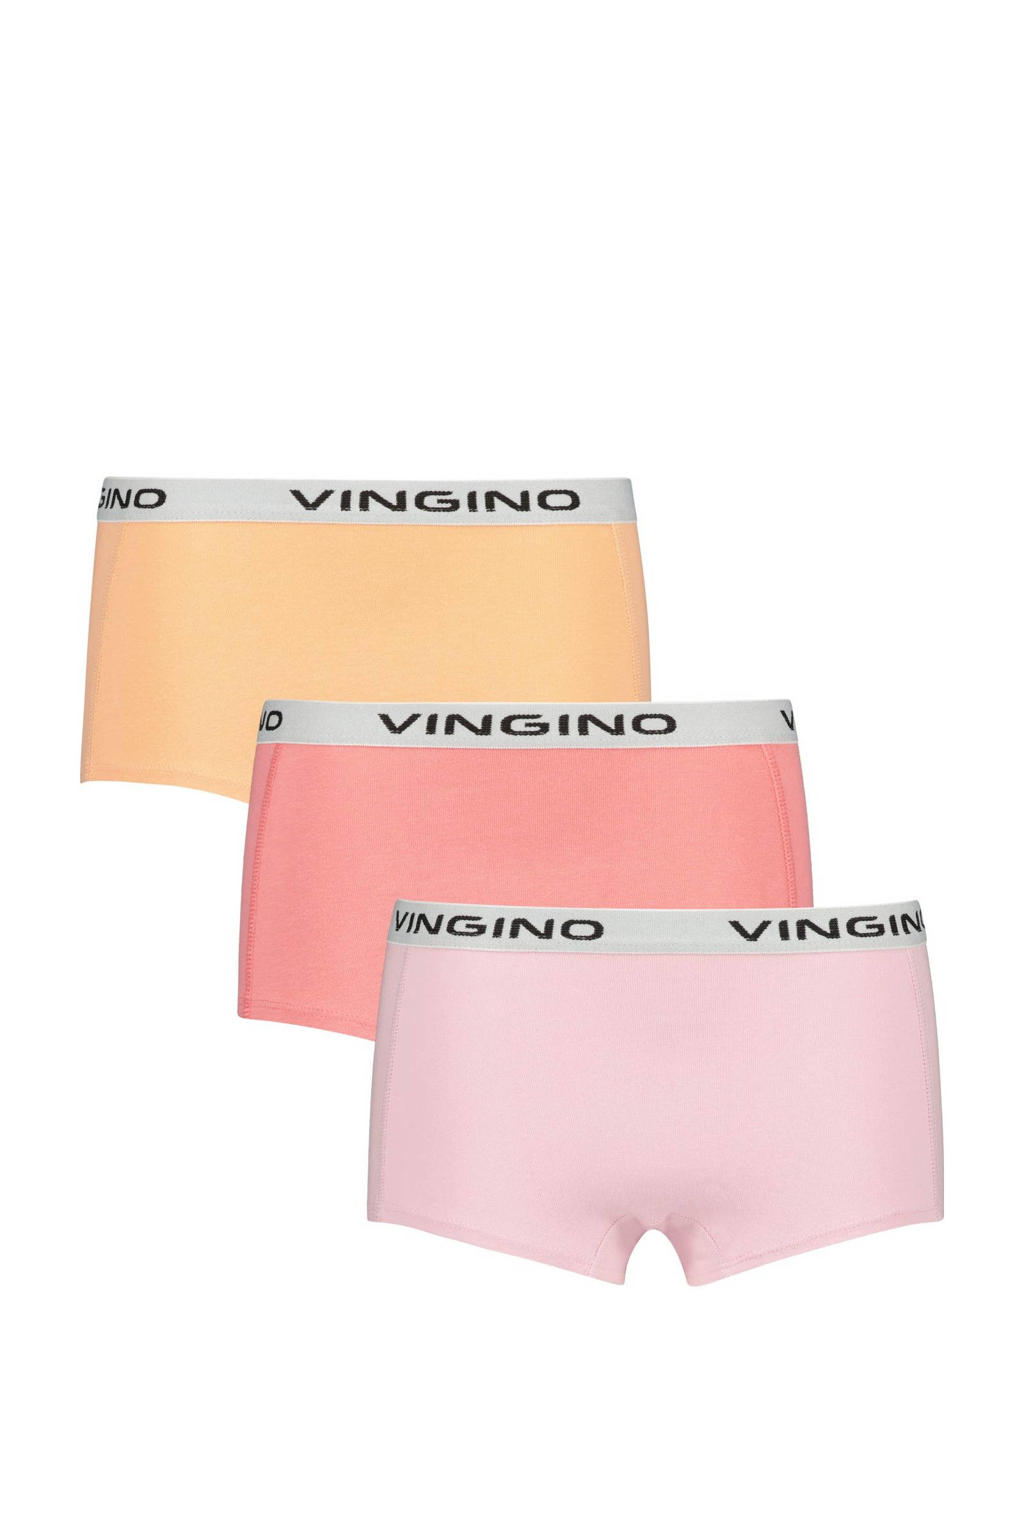 Vingino shorts - set van 2 roze/koraalroze/geel